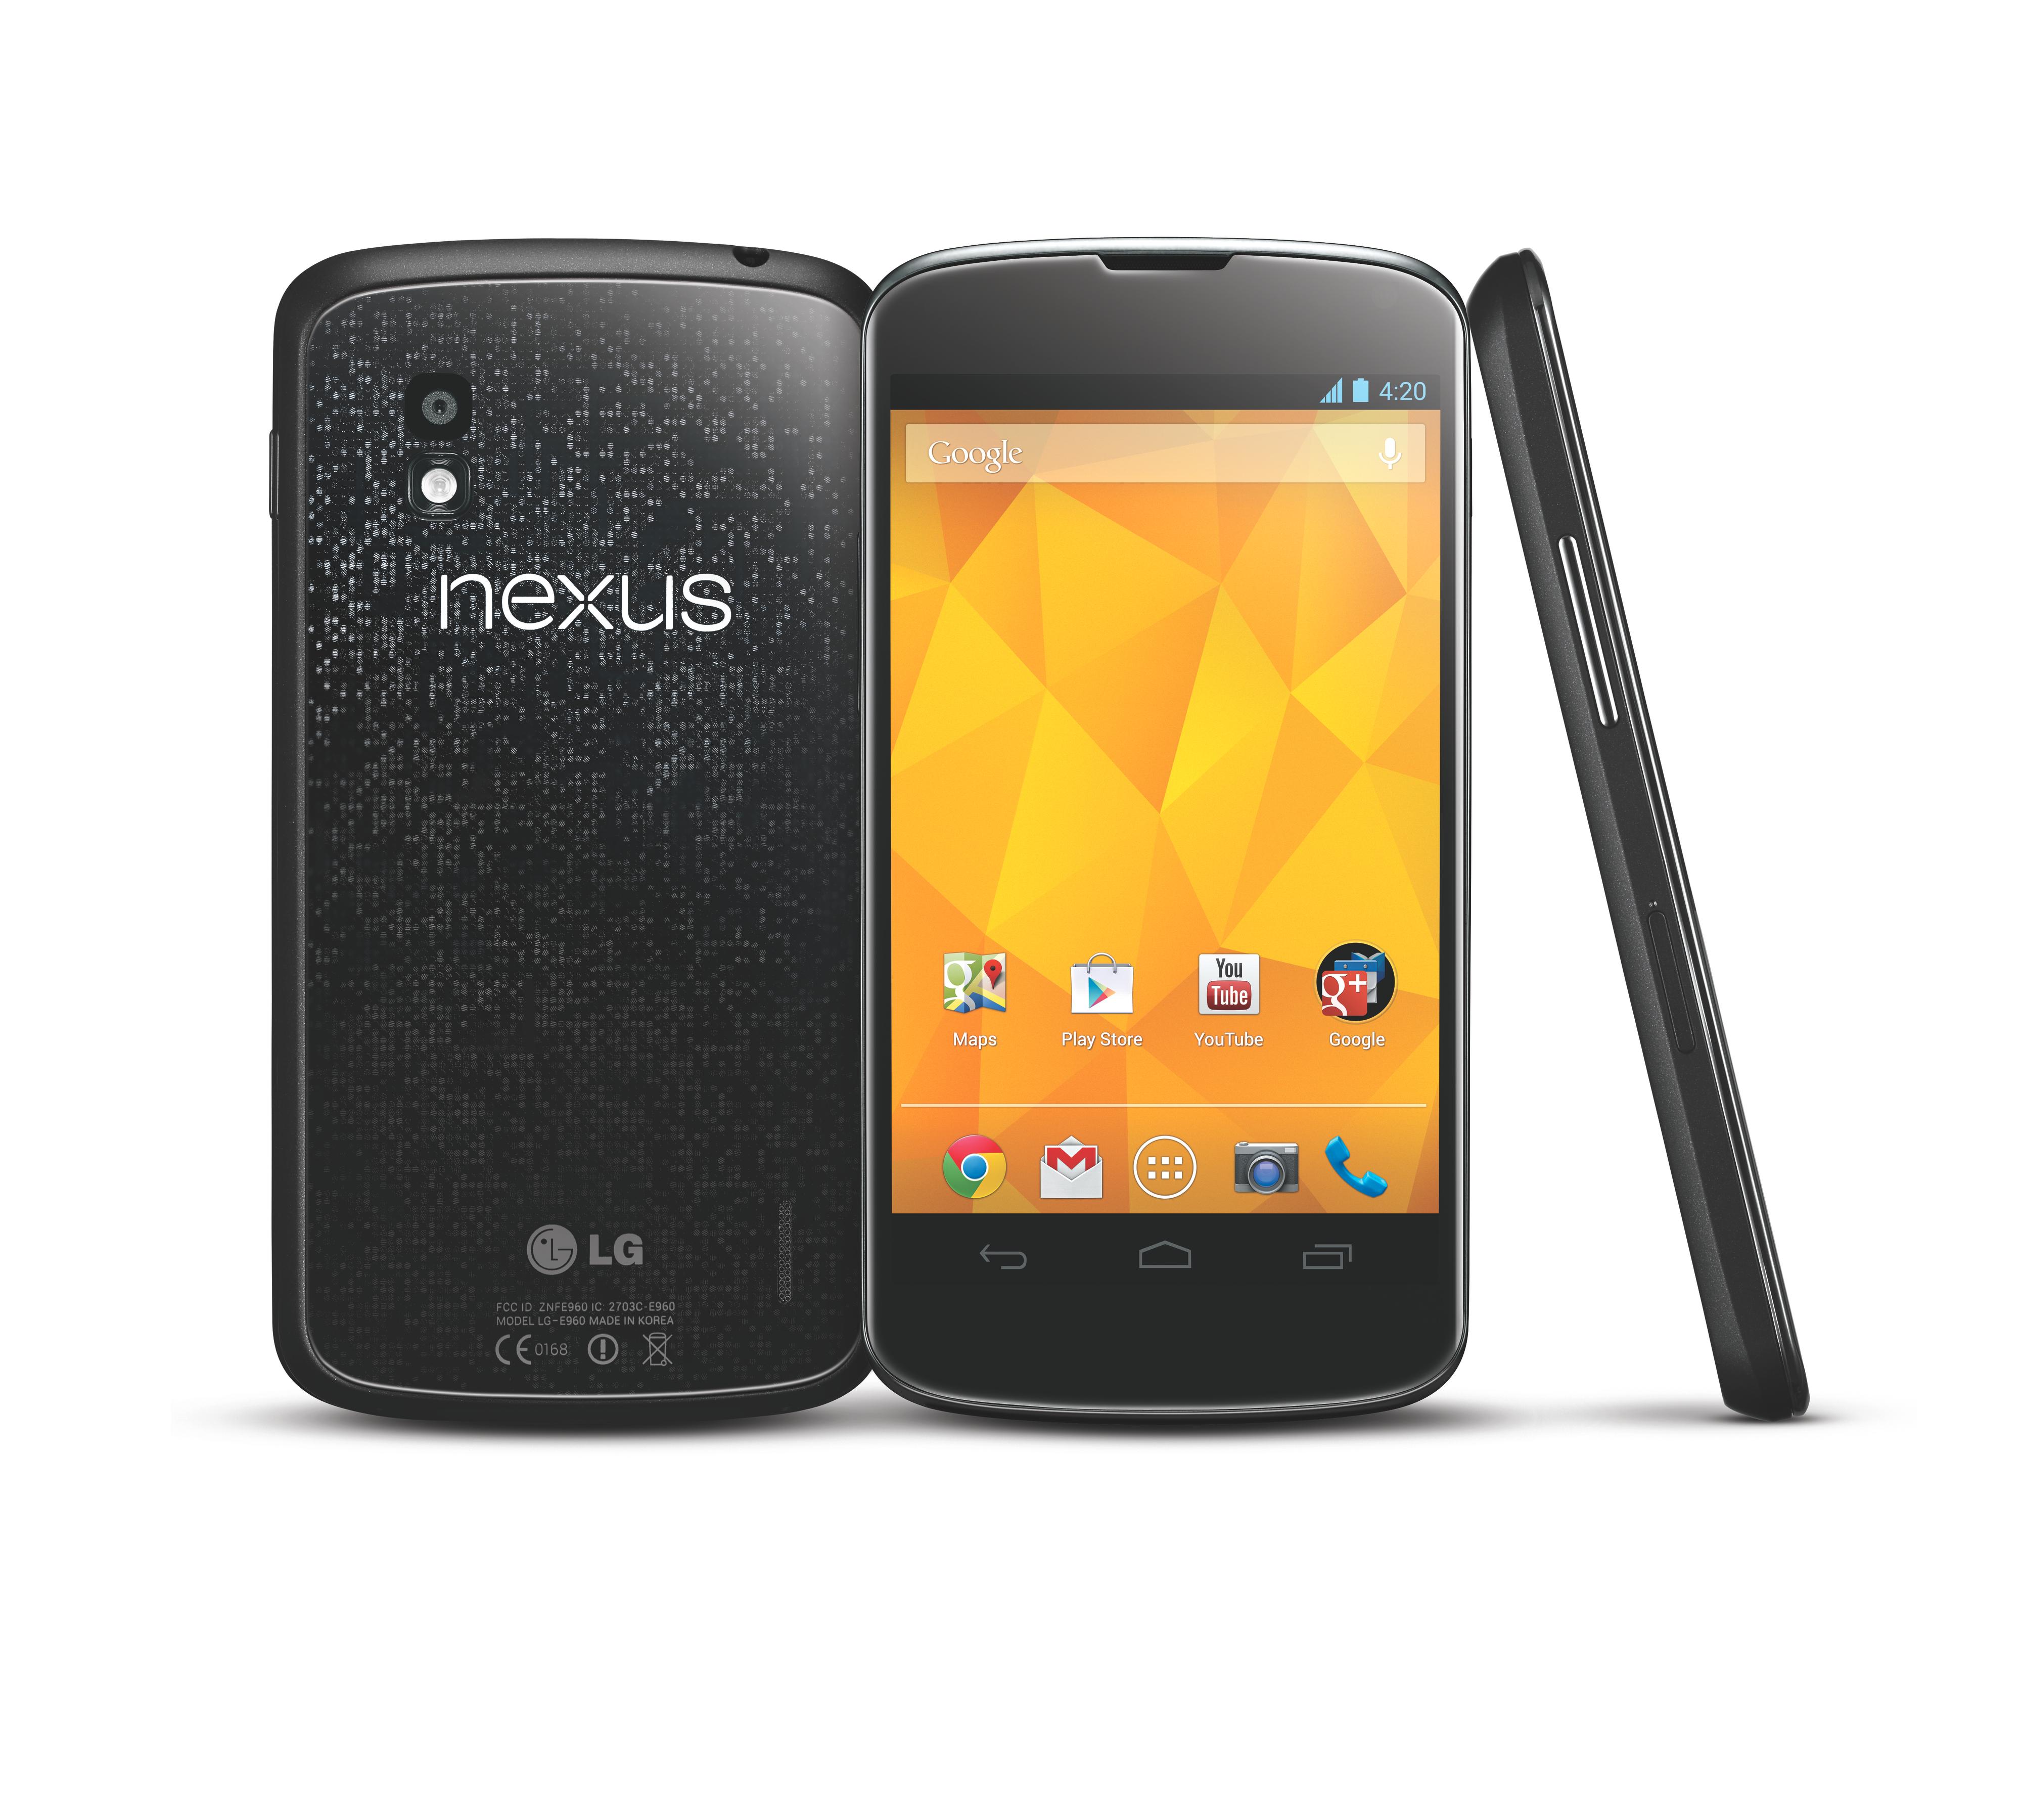 Nexus 4 er Googles nye referansetelefon for Android 4.2.